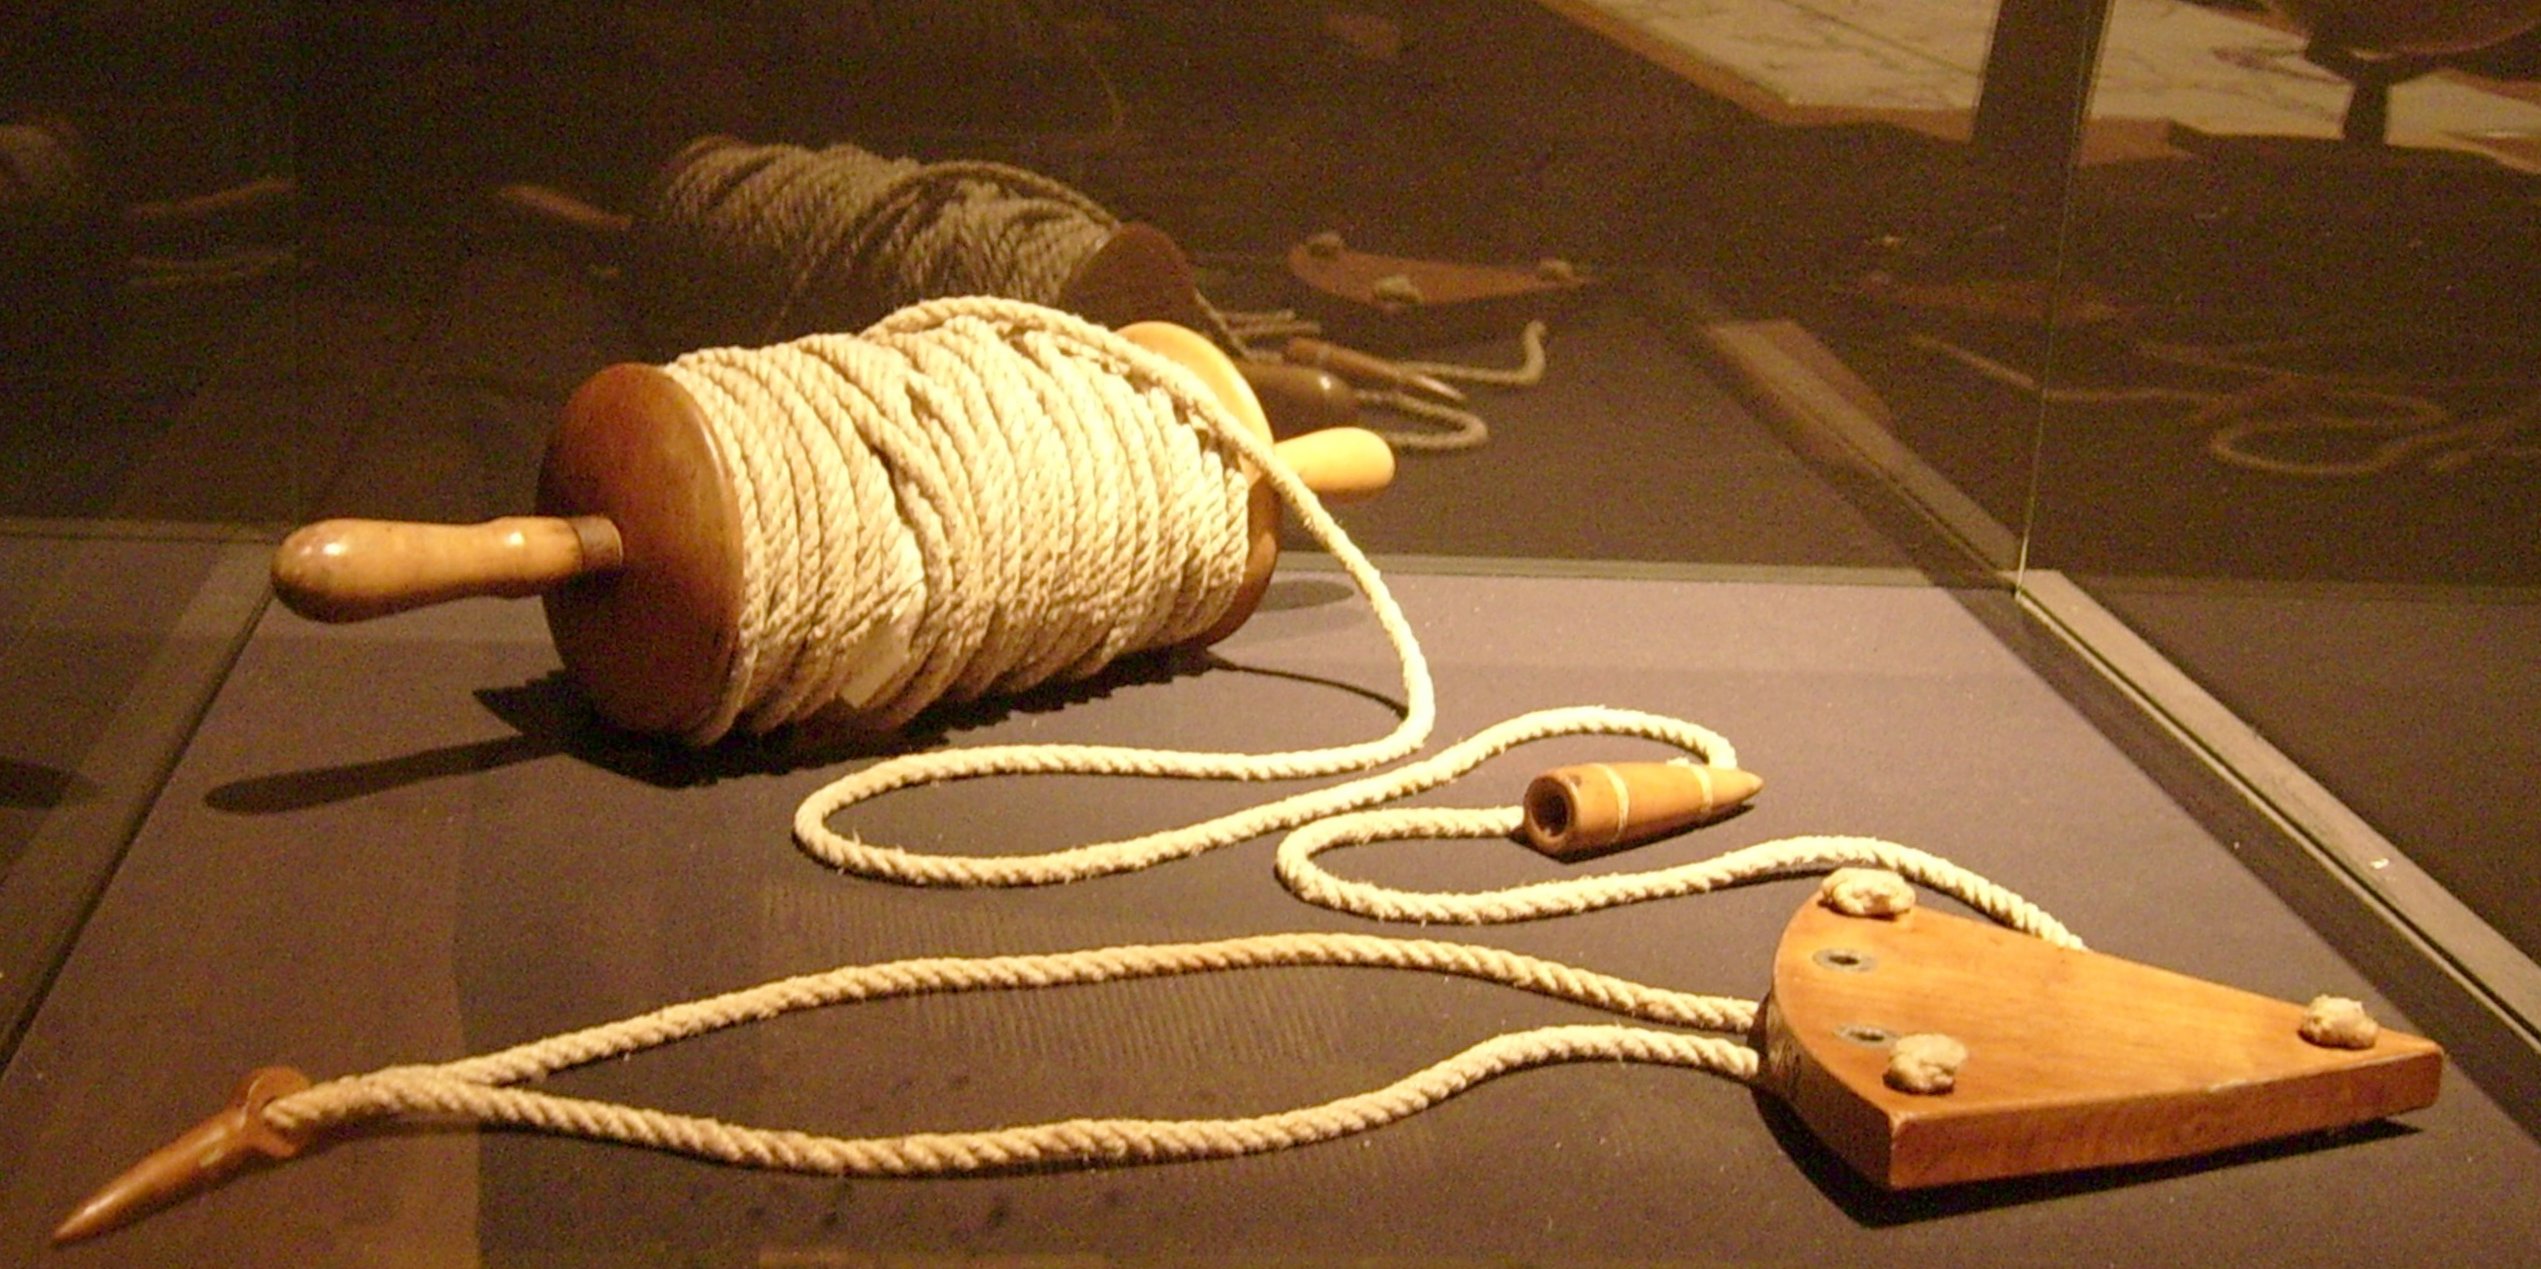 Una corredera de barquilla al estilo de las hechas en el siglo XVI, exhibida en el Museo Naval de Madrid (Wikimedia Commons)